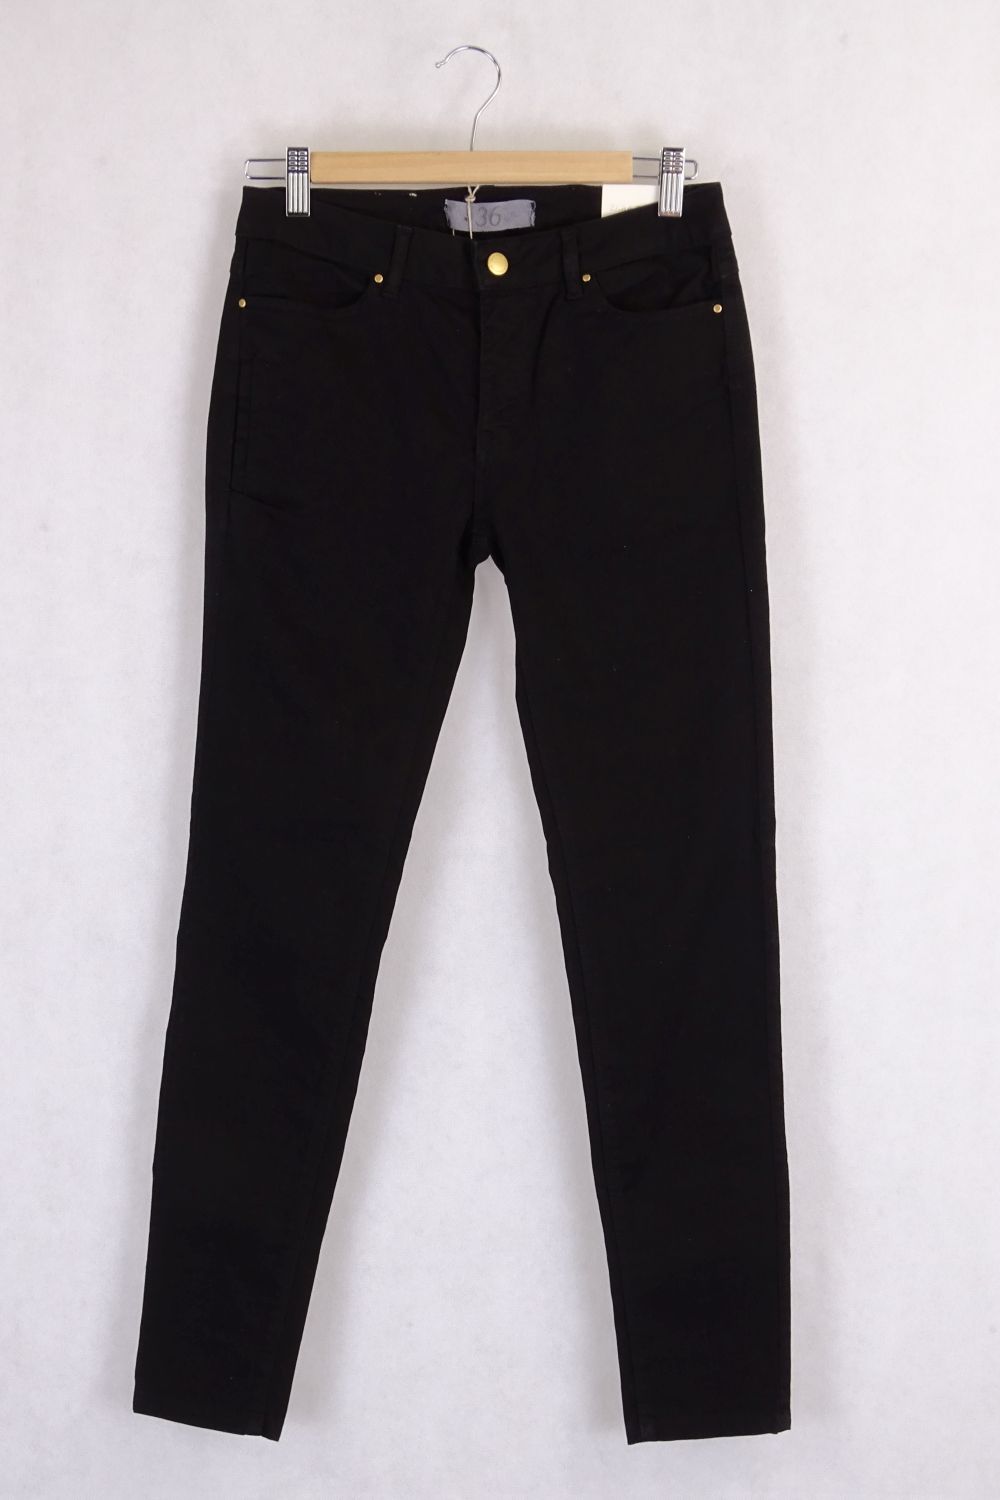 Black Zara Very Skinny Jeans 9 (Eur 35, USA 4)